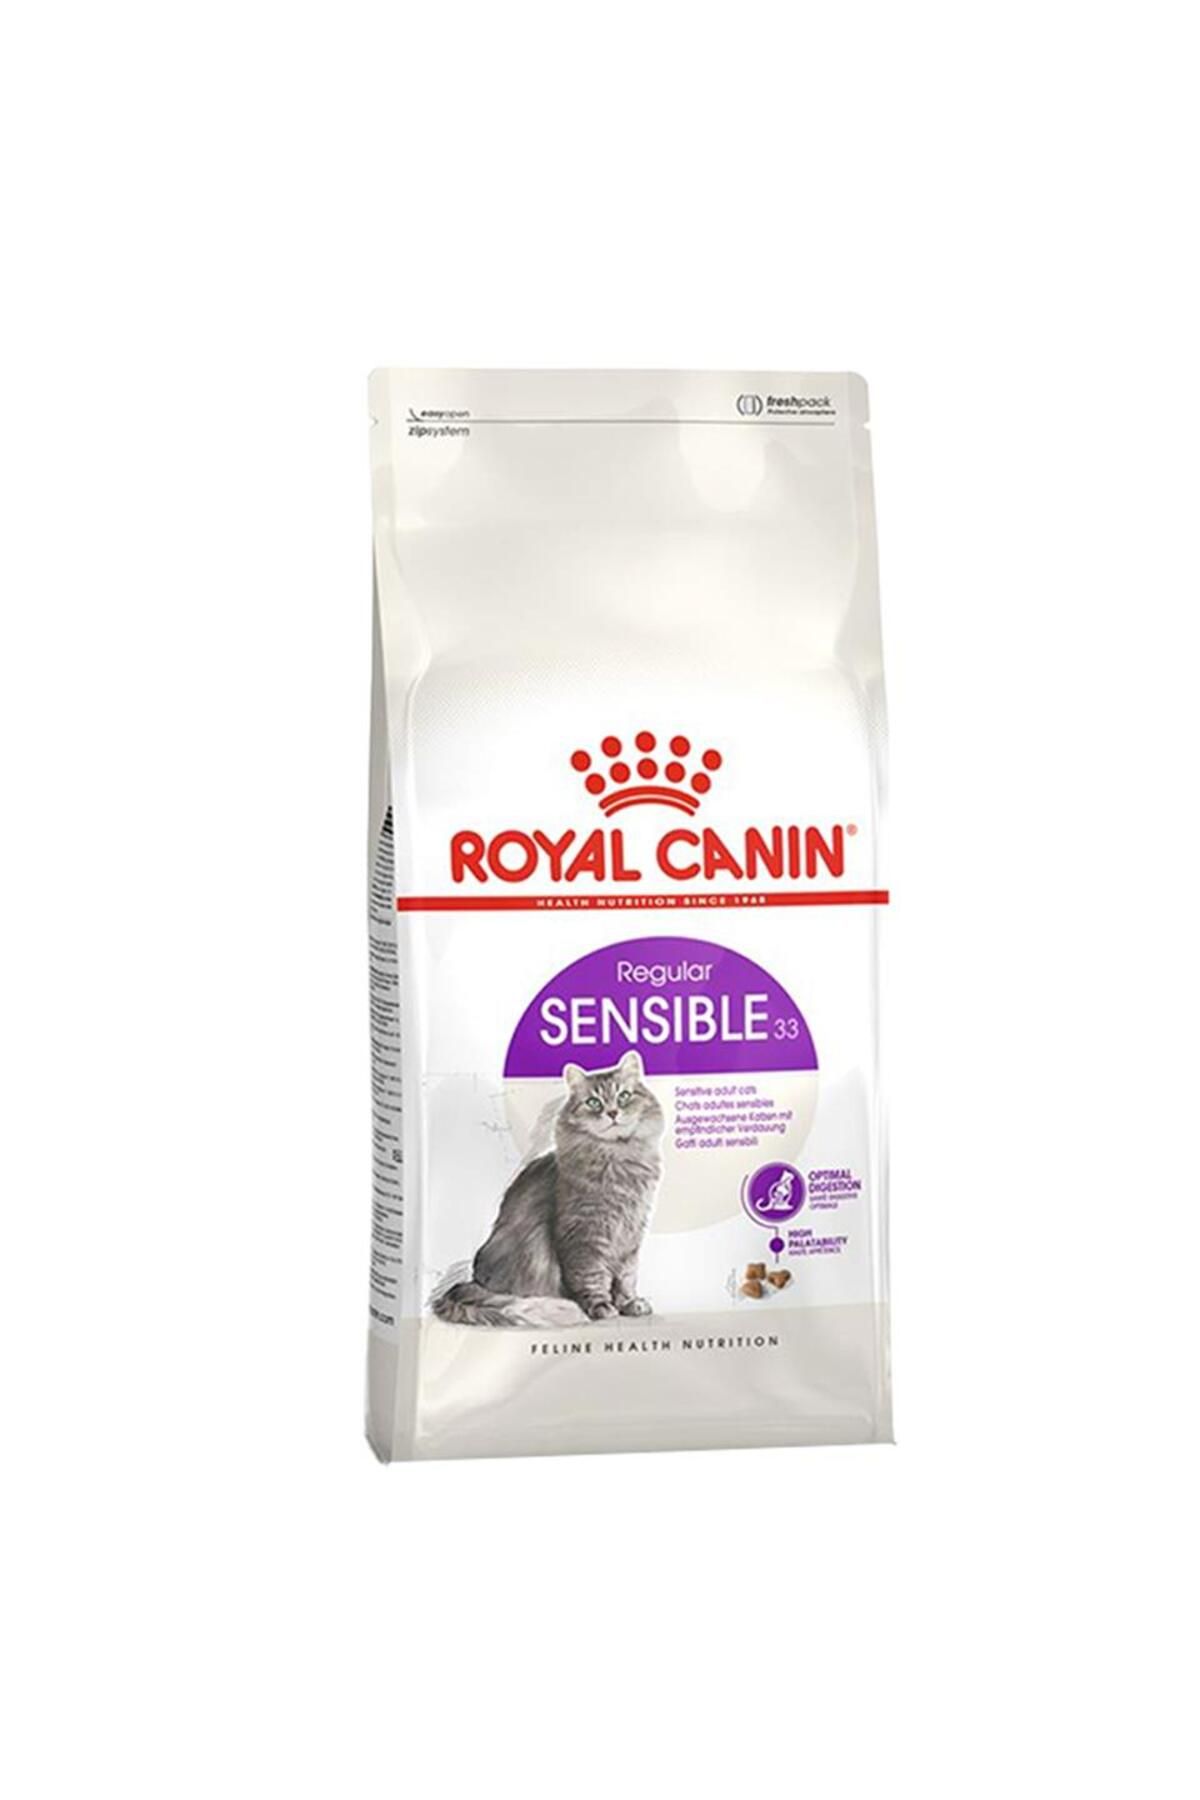 Royal Canin ® Sensible 33 Hassas Sindirimi Destekleyici Yetişkin Kedi Maması 15 Kg